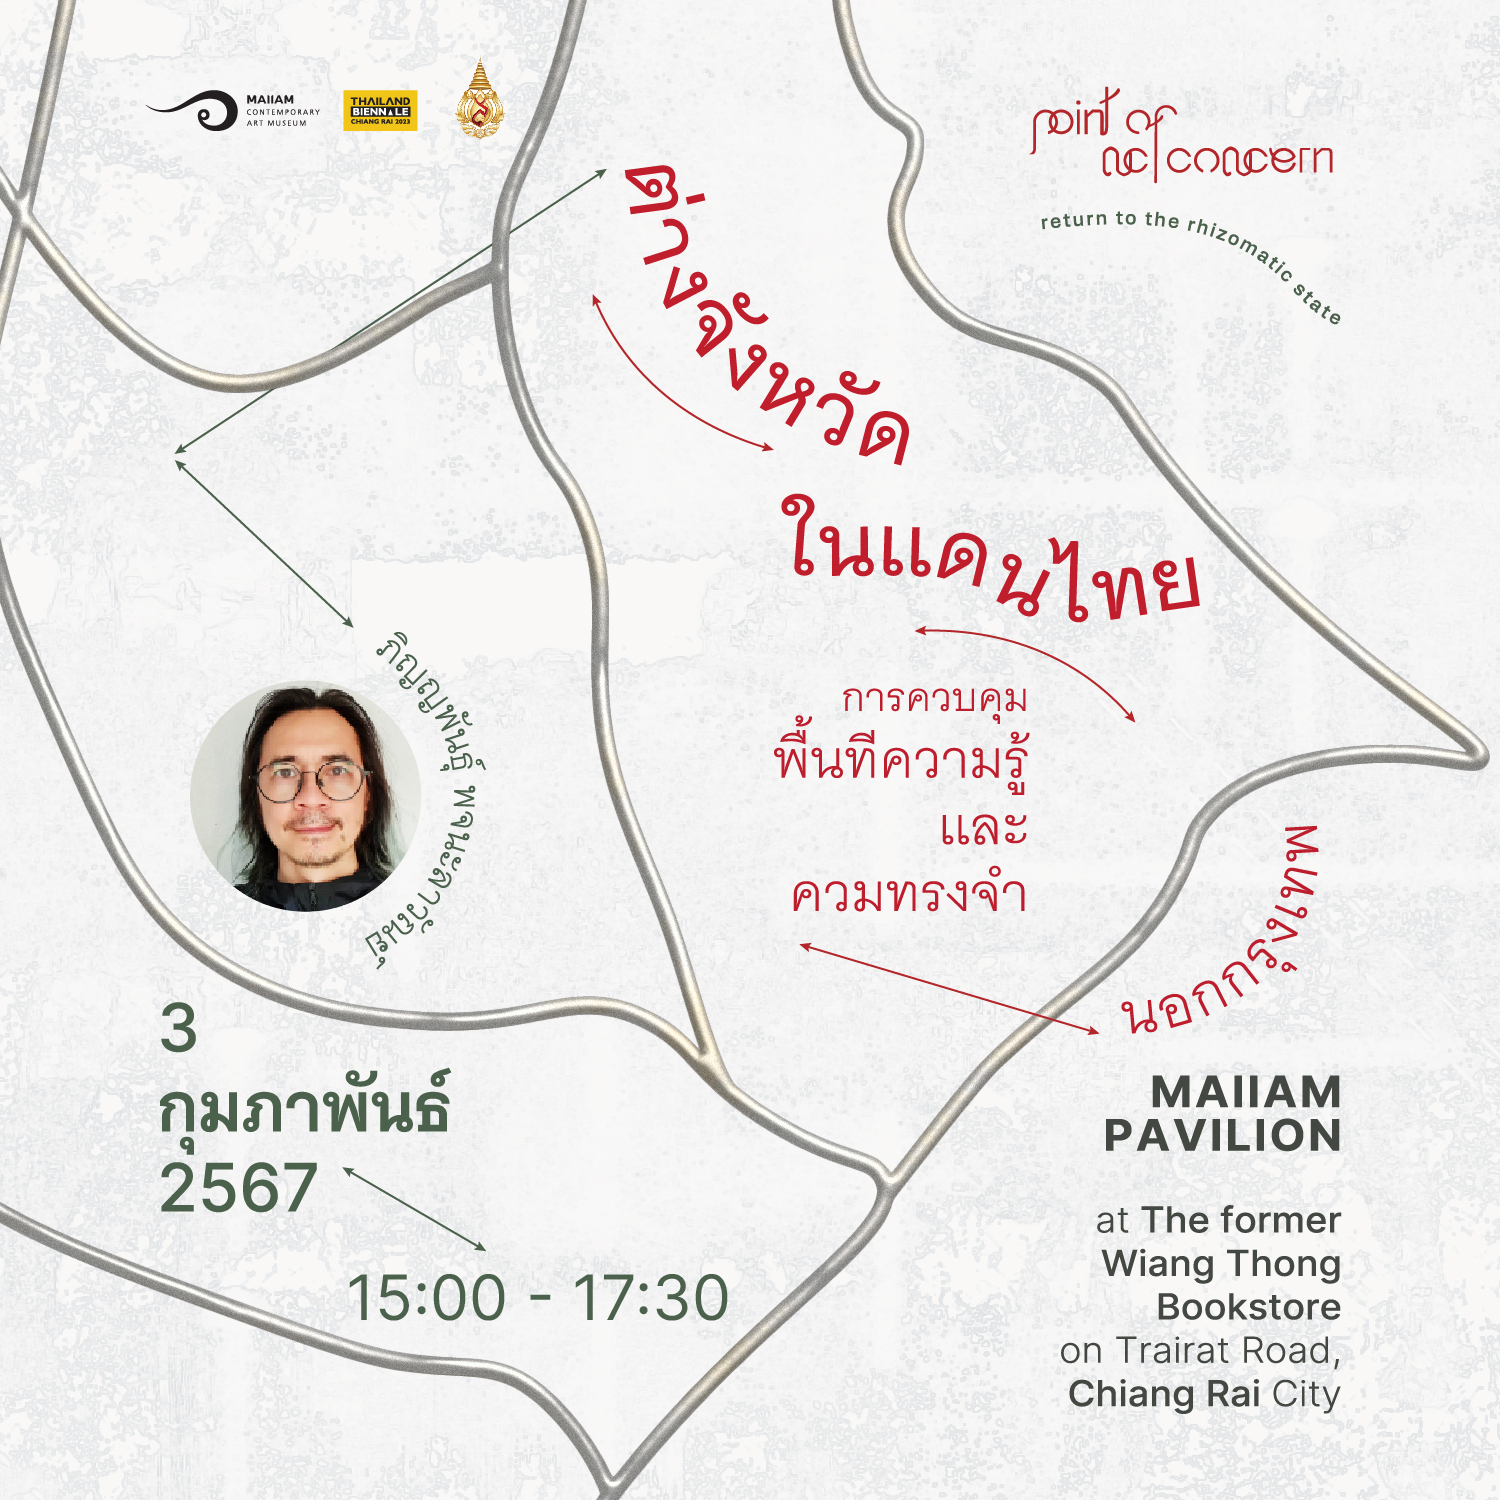 เชิญเข้าร่วมกิจกรรมเสวนาเรื่อง “ต่างจังหวัดในแดนไทย: การควบคุมพื้นที่ ความรู้ และความทรงจำนอกกรุงเทพฯ”